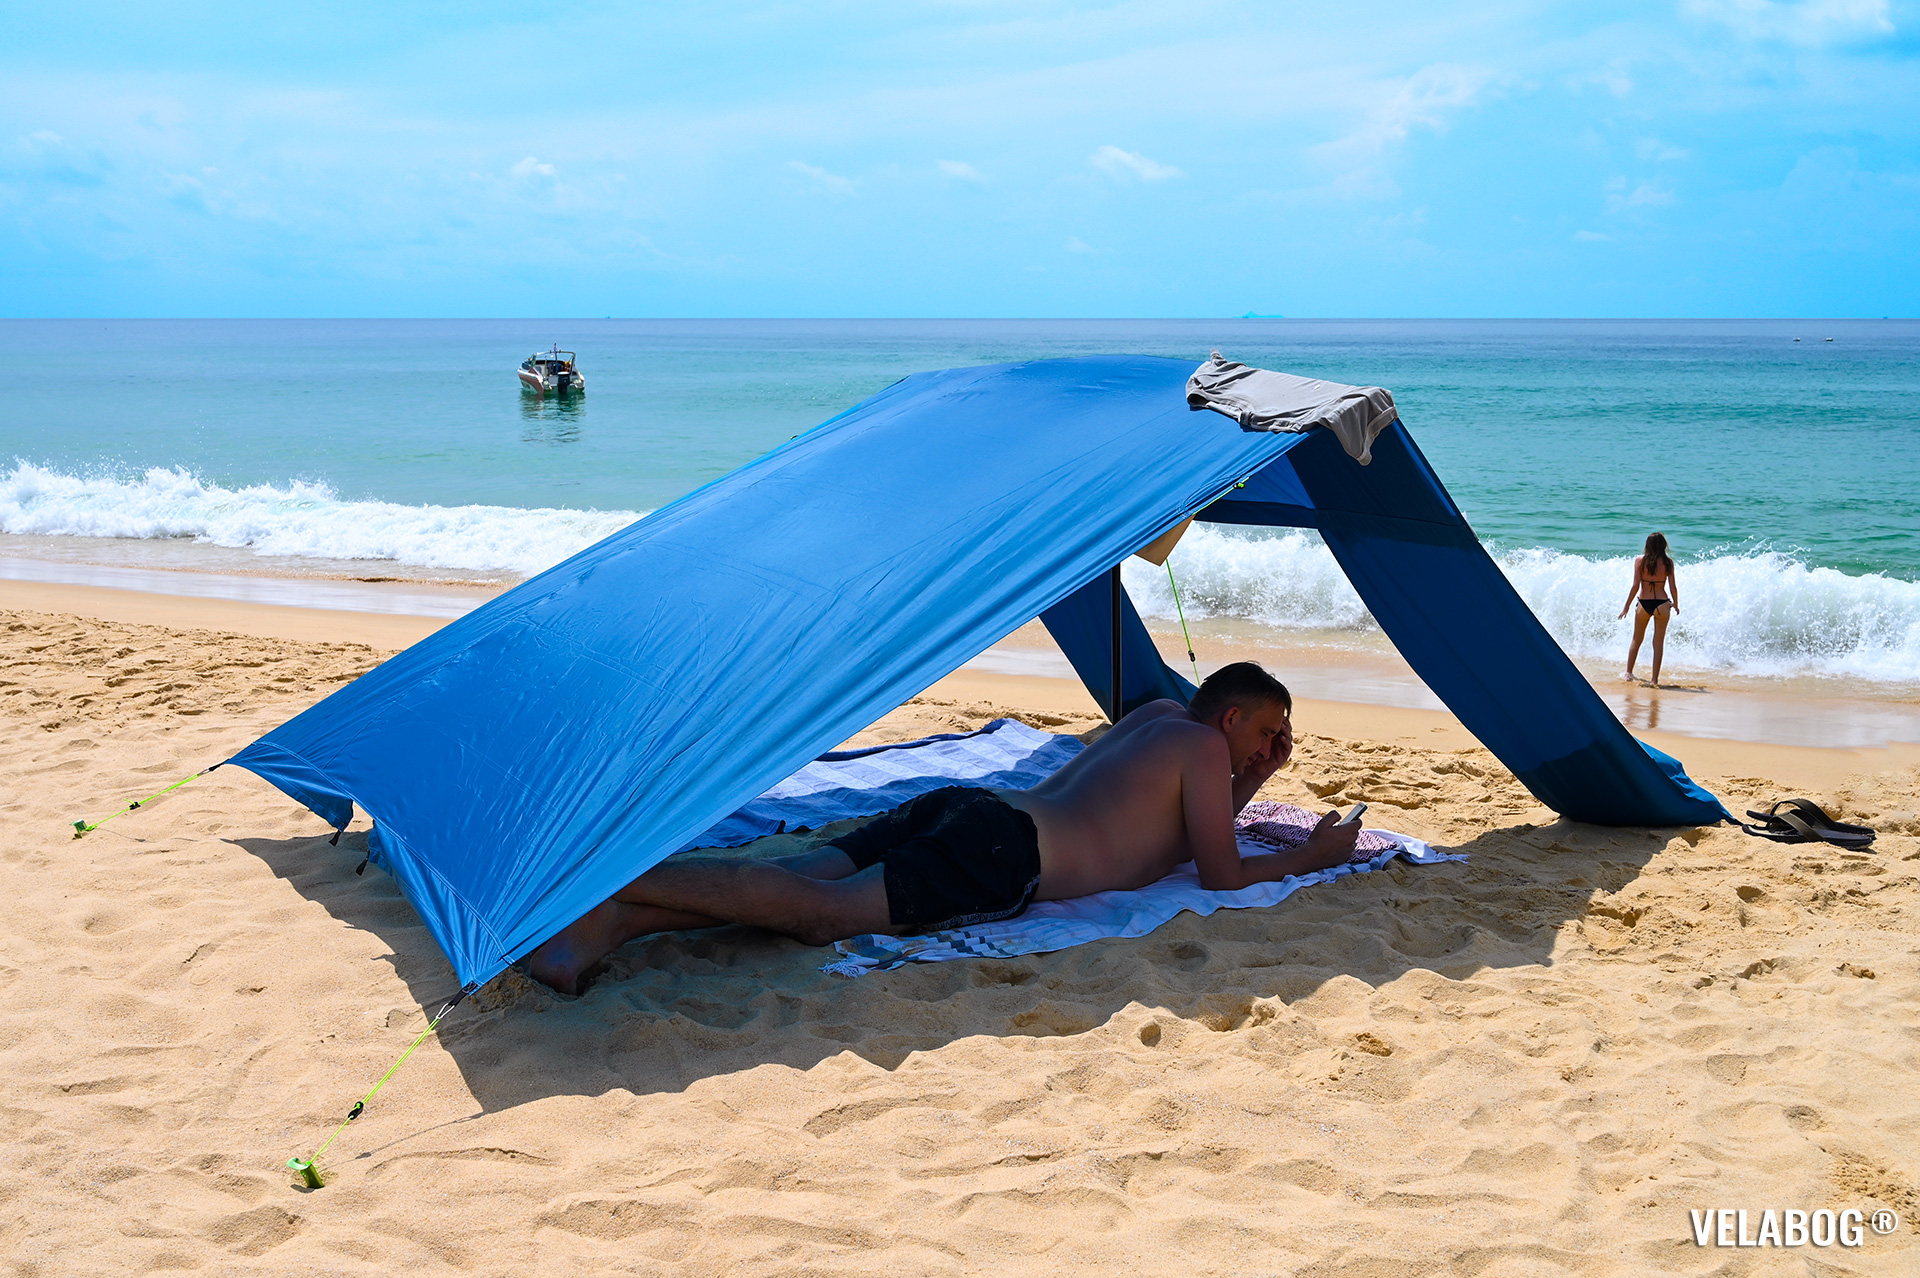 Солнечный парус Velabog «Breeze» голубой. Высокое и не душное укрытие от солнца на безветренном пляже в Таиланде. Вариант установки при слабом или порывистом ветре или если ветра нет.